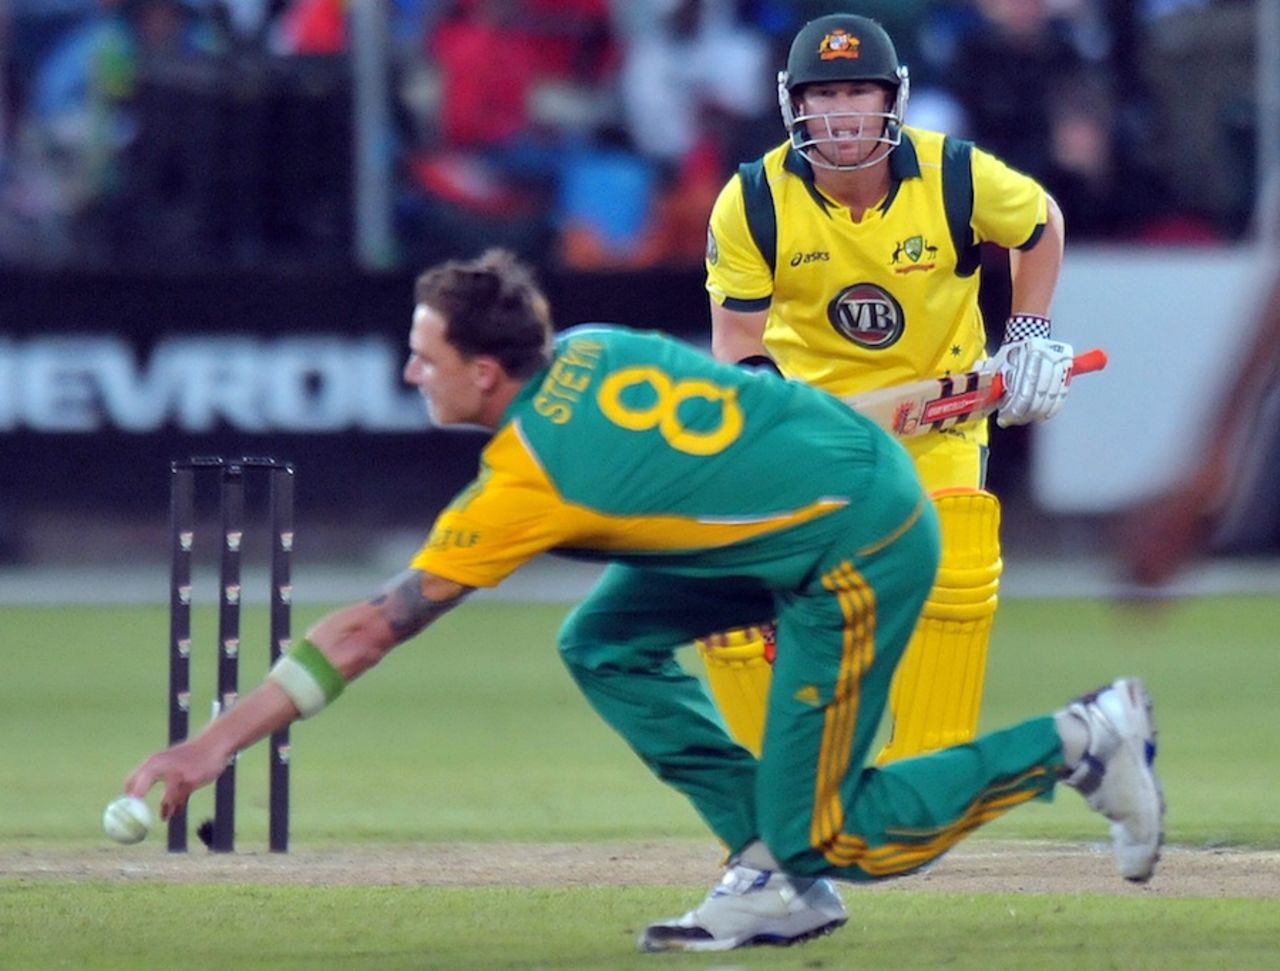 Dale Steyn stops a shot from David Warner, South Africa v Australia, 2nd ODI, Port Elizabeth, October 23, 2011